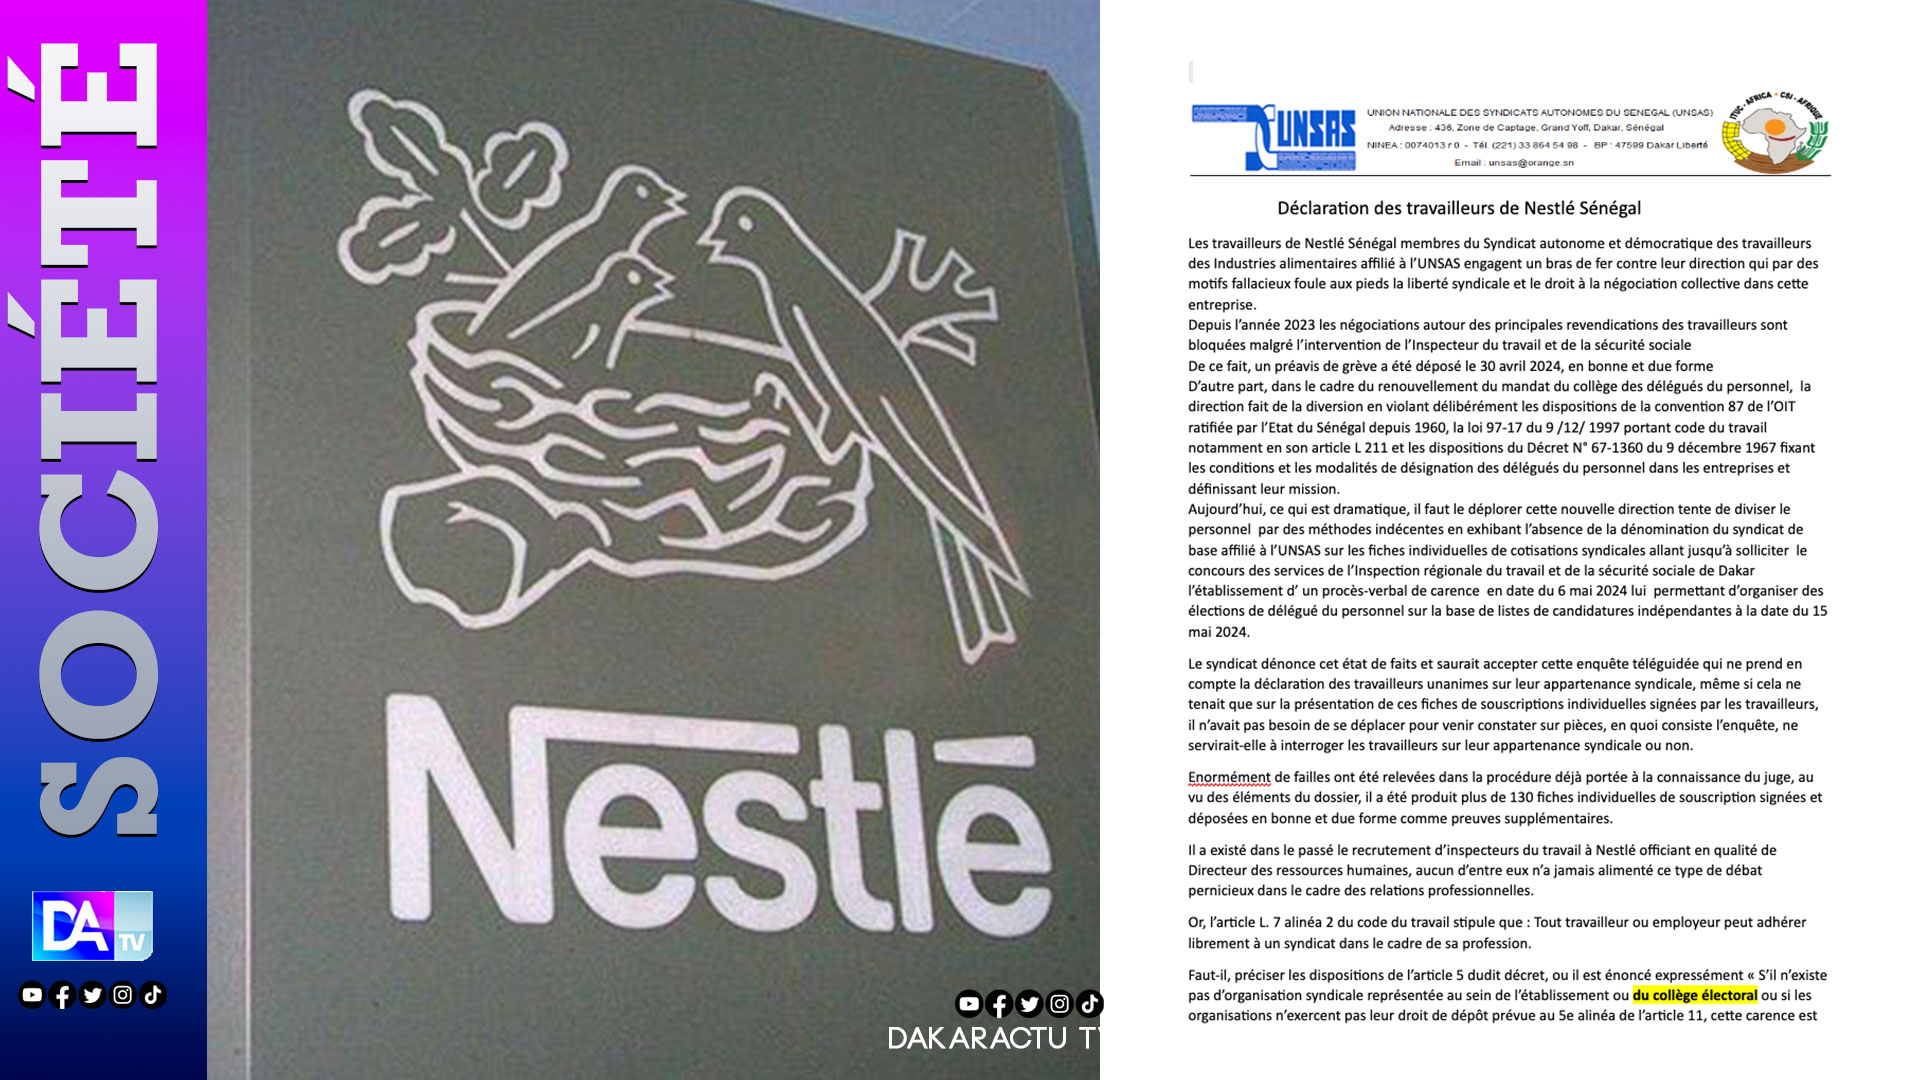 Nestlé Sénégal: Les travailleurs en croisade contre les restrictions liées à " la liberté syndicale et au droit à la négociation collective"